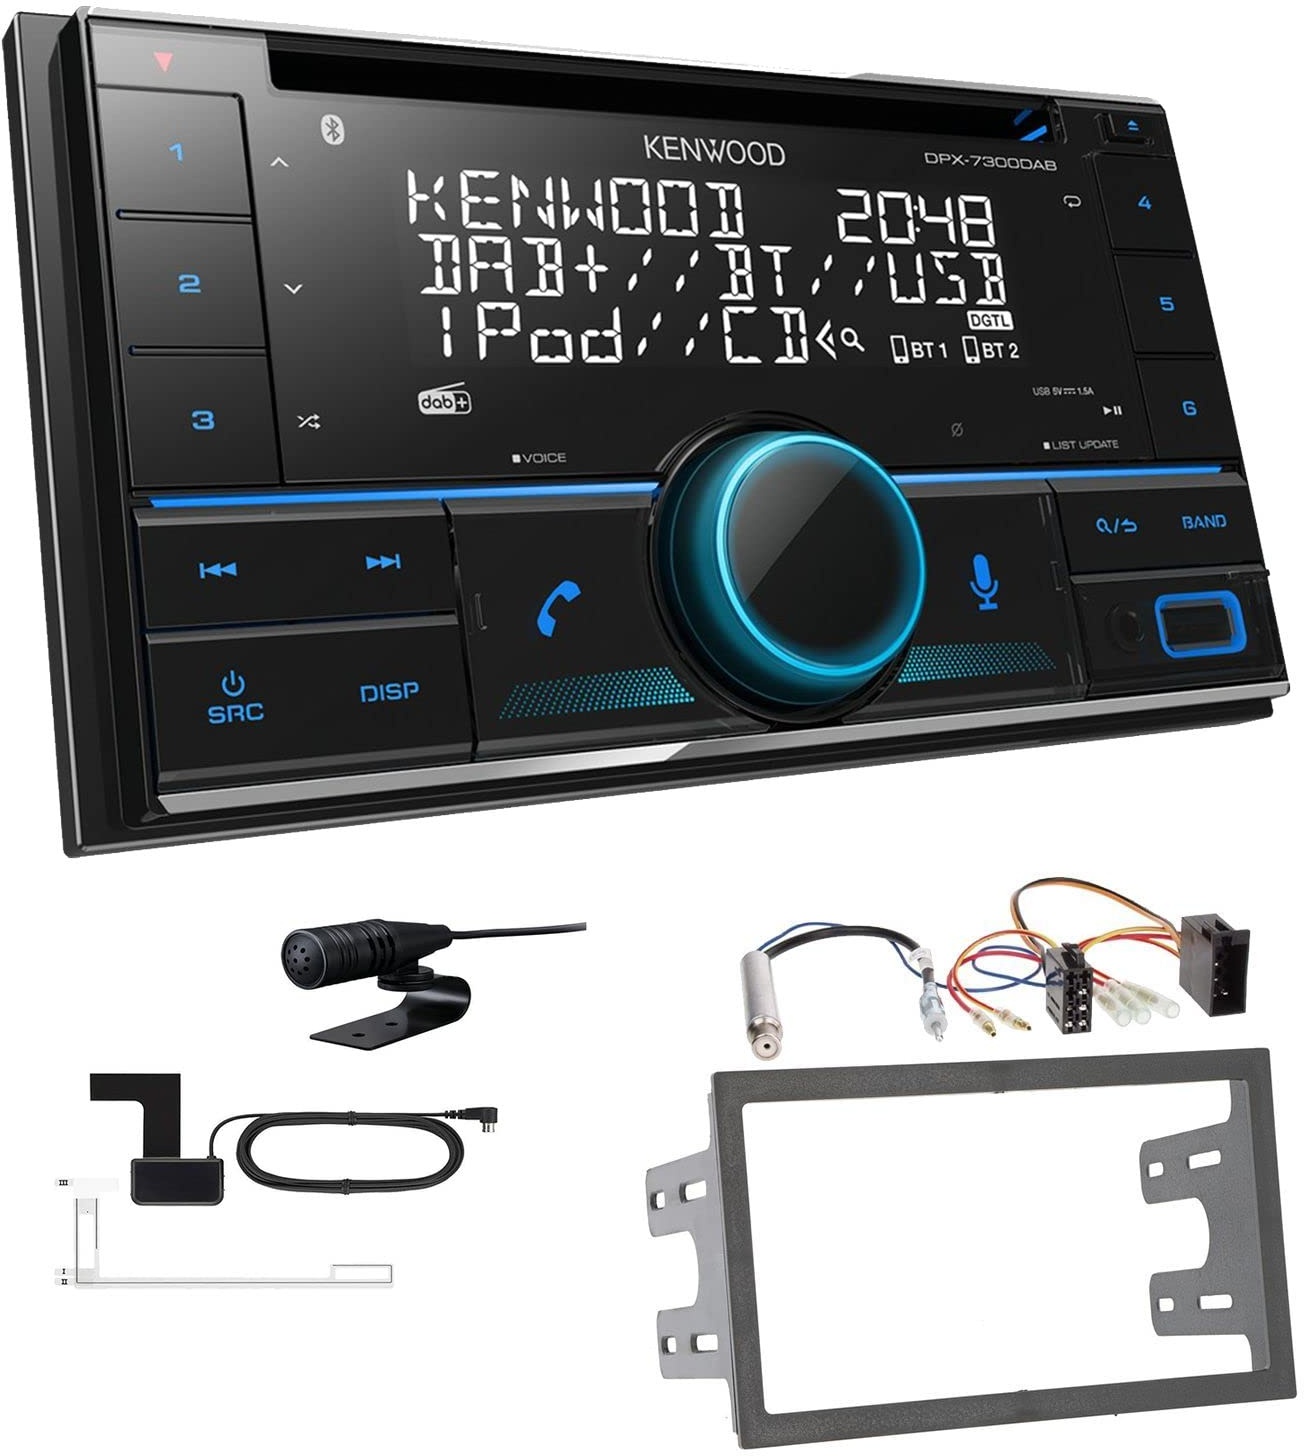 Kenwood DPX-7300DAB 2-DIN Autoradio mit Bluetooth Digitalradio DAB+ USB CD passend für Volkswagen VW Golf IV 1997-2003 schwarz